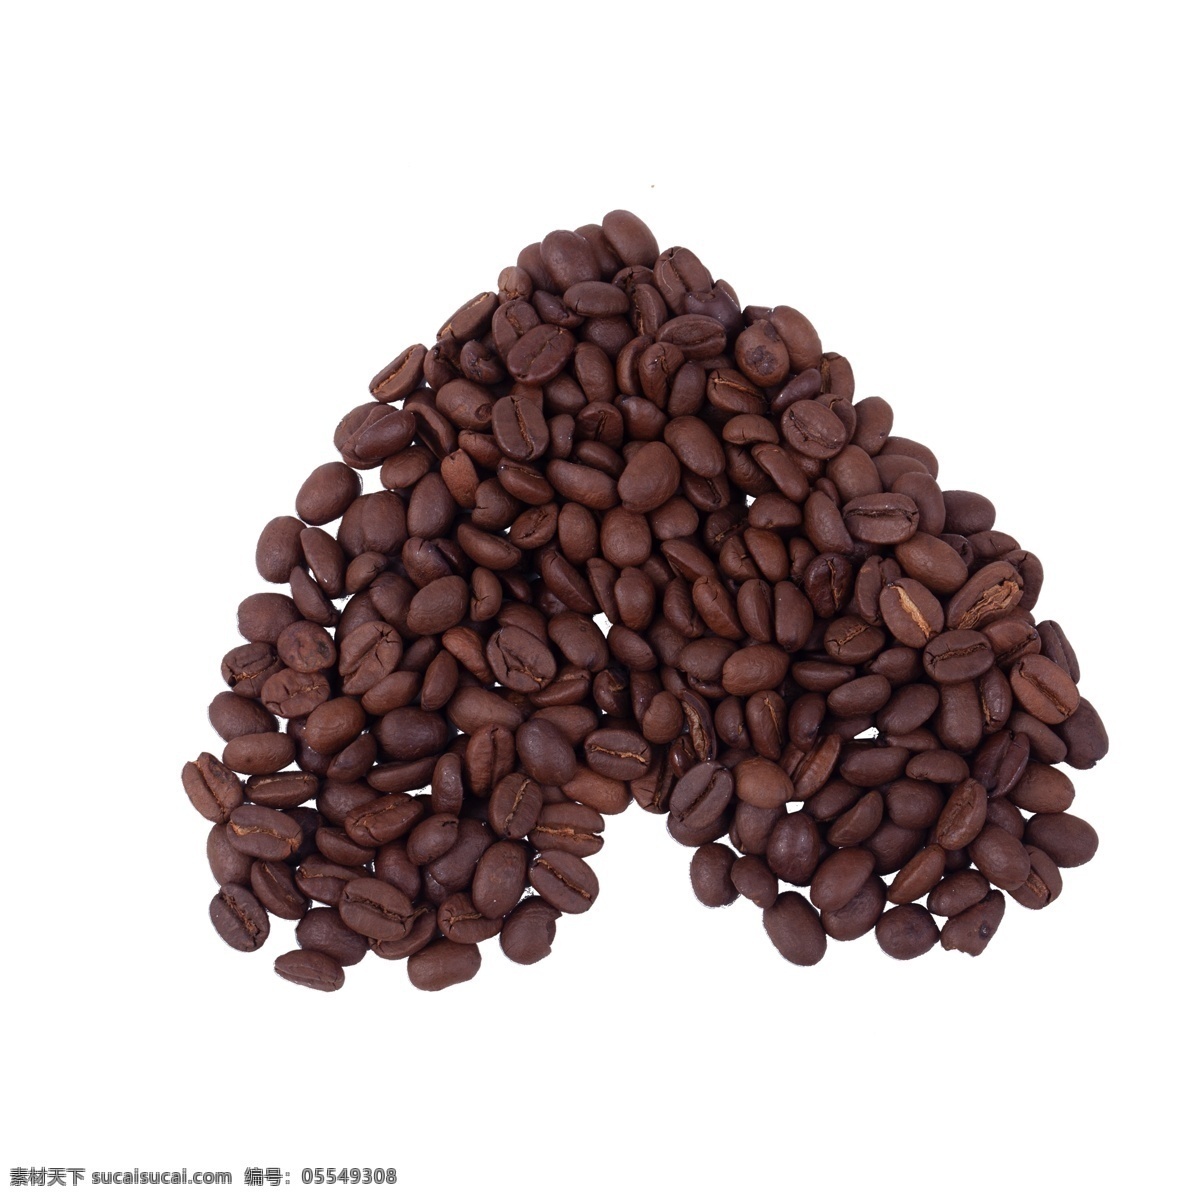 咖啡豆 免 抠 浓香咖啡豆 提神咖啡豆 特浓咖啡豆 咖啡豆免抠 食物 饮料 巧克力 色